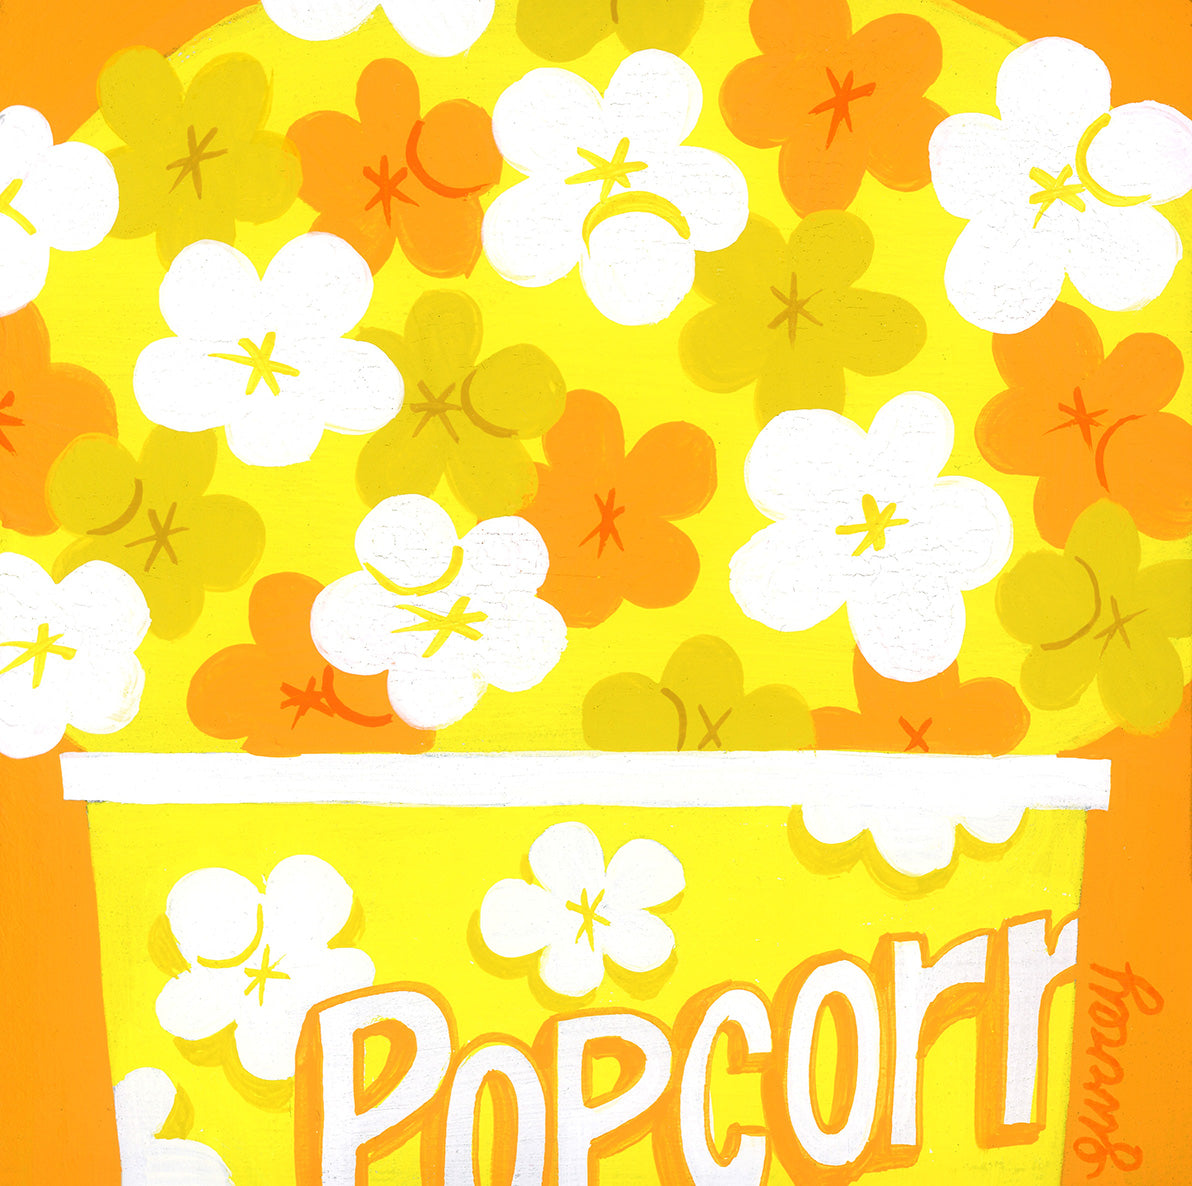 Ellen Surrey - Popcorn